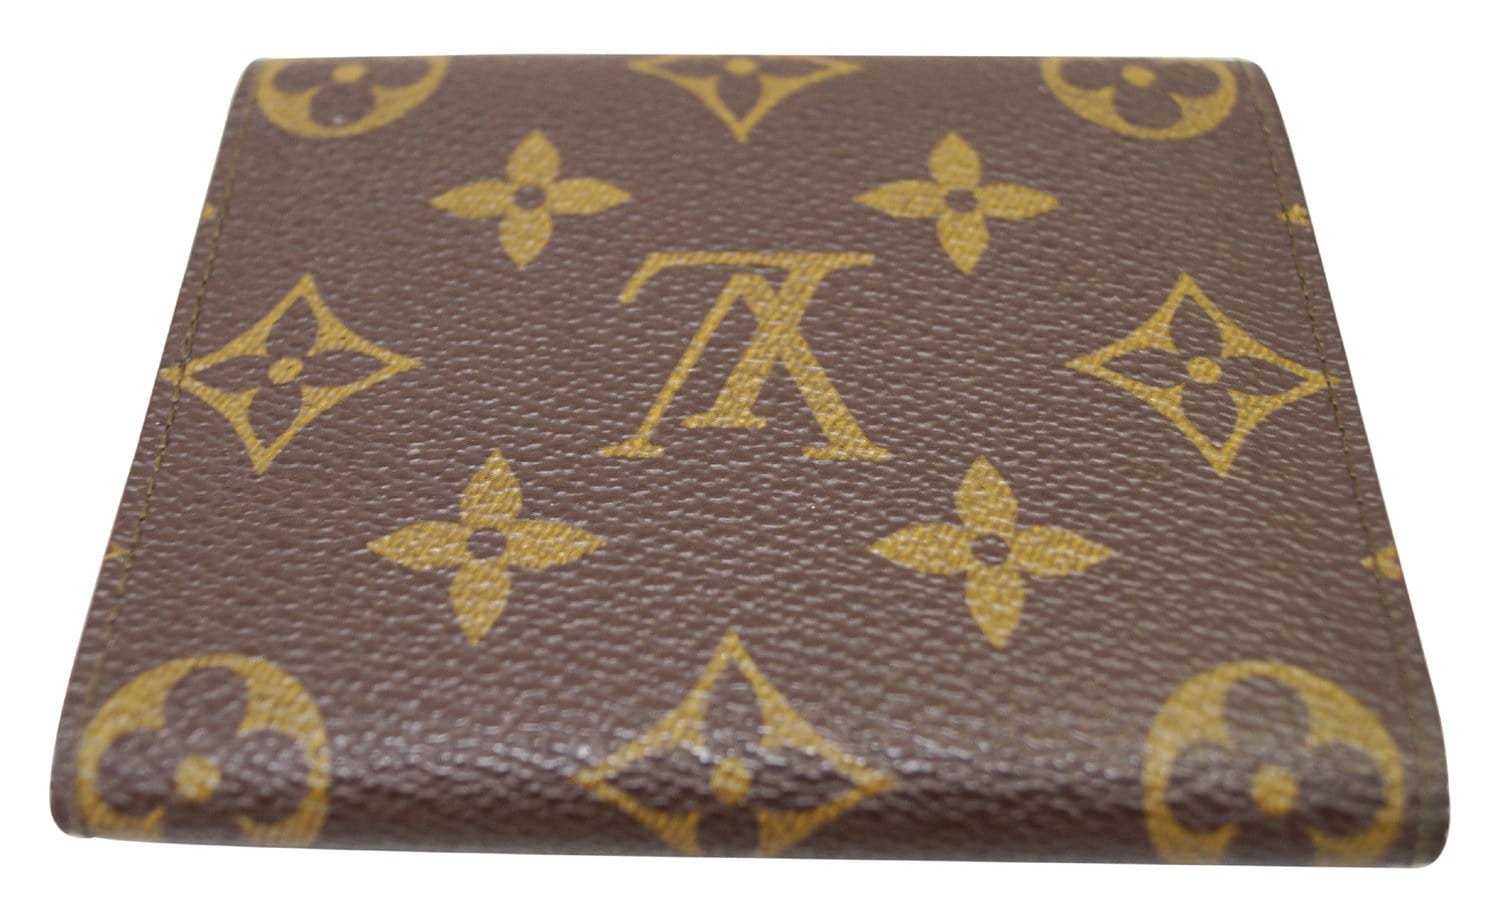 Louis Vuitton Authentic Monogram Trifold Purse Wallet Auth LV